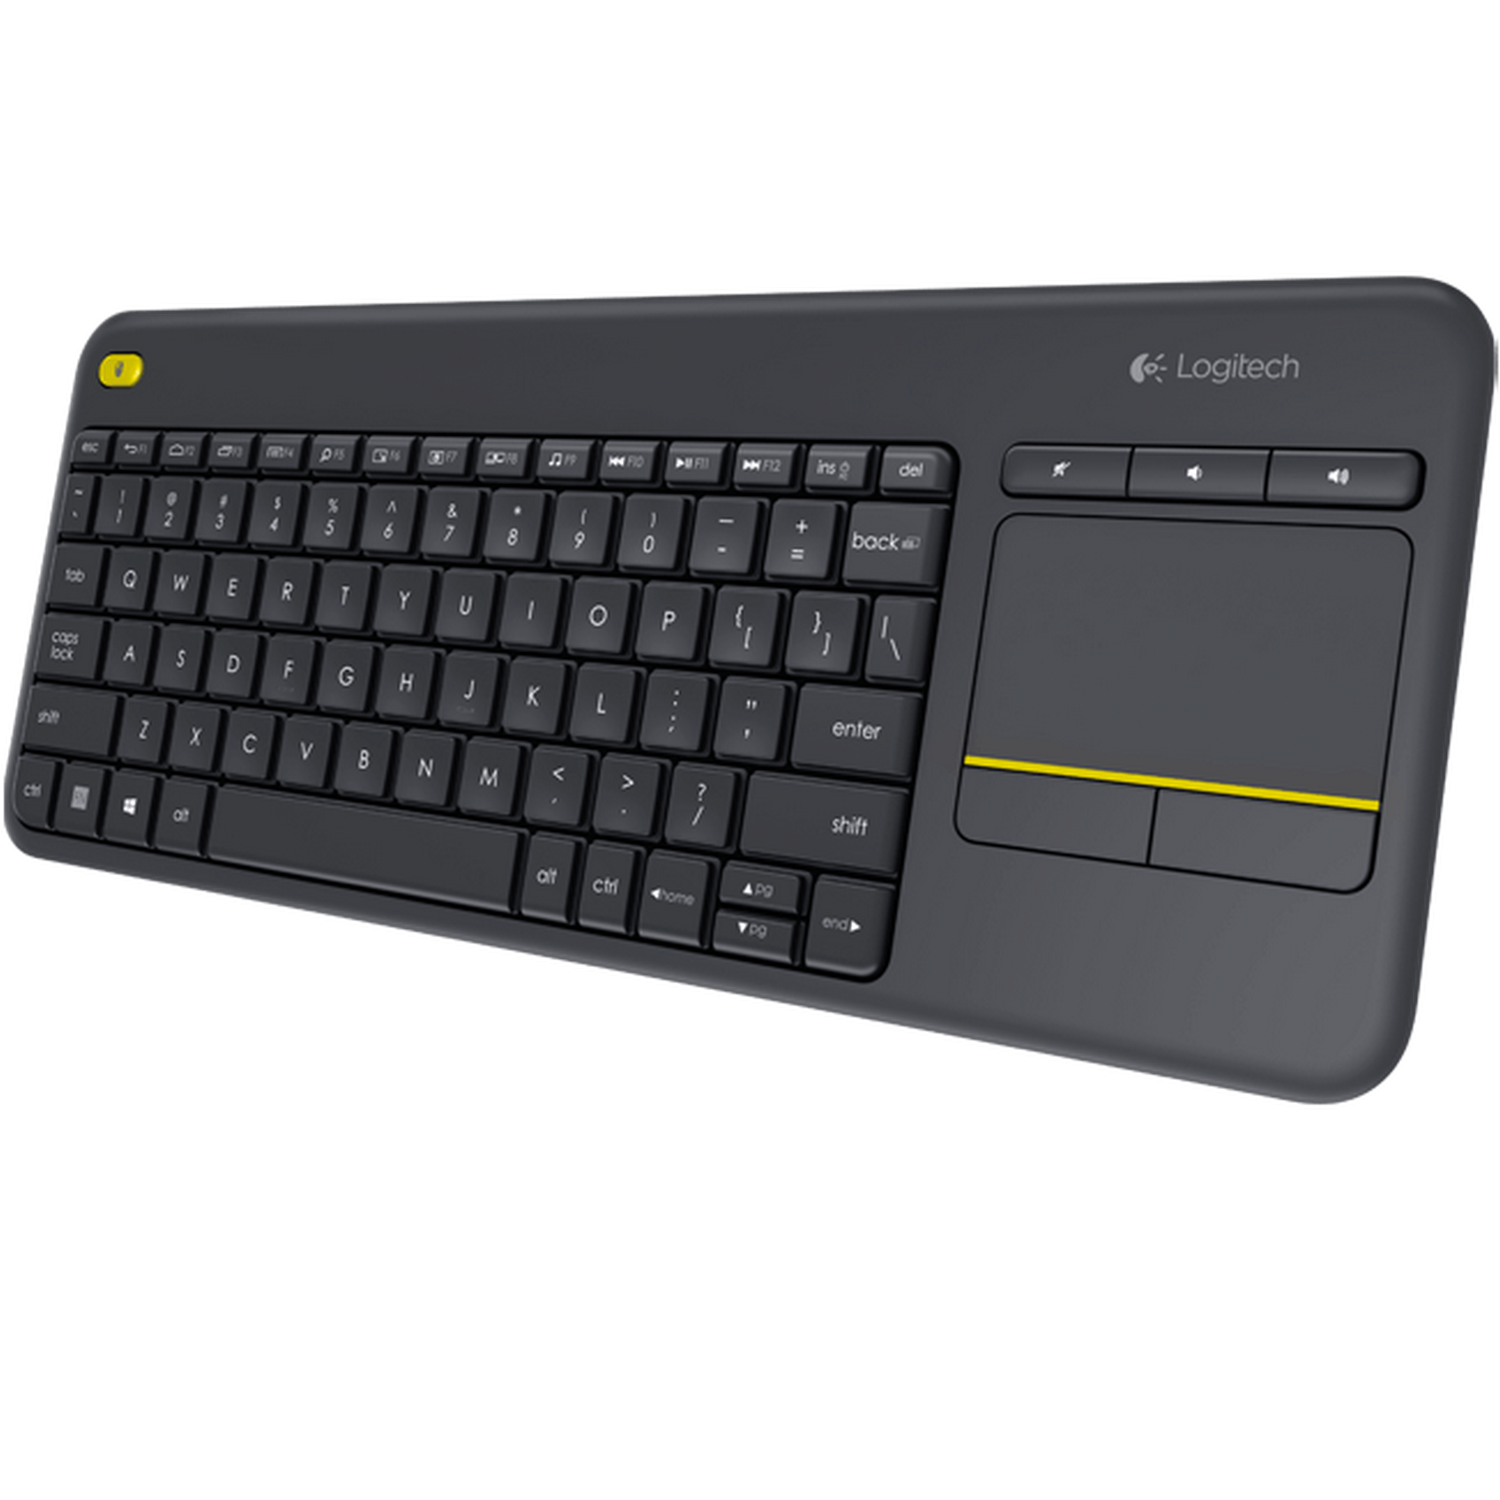 Logitech - Logitech Wireless Touch Keyboard K400 Plus - Black UK Layout (920-007143)